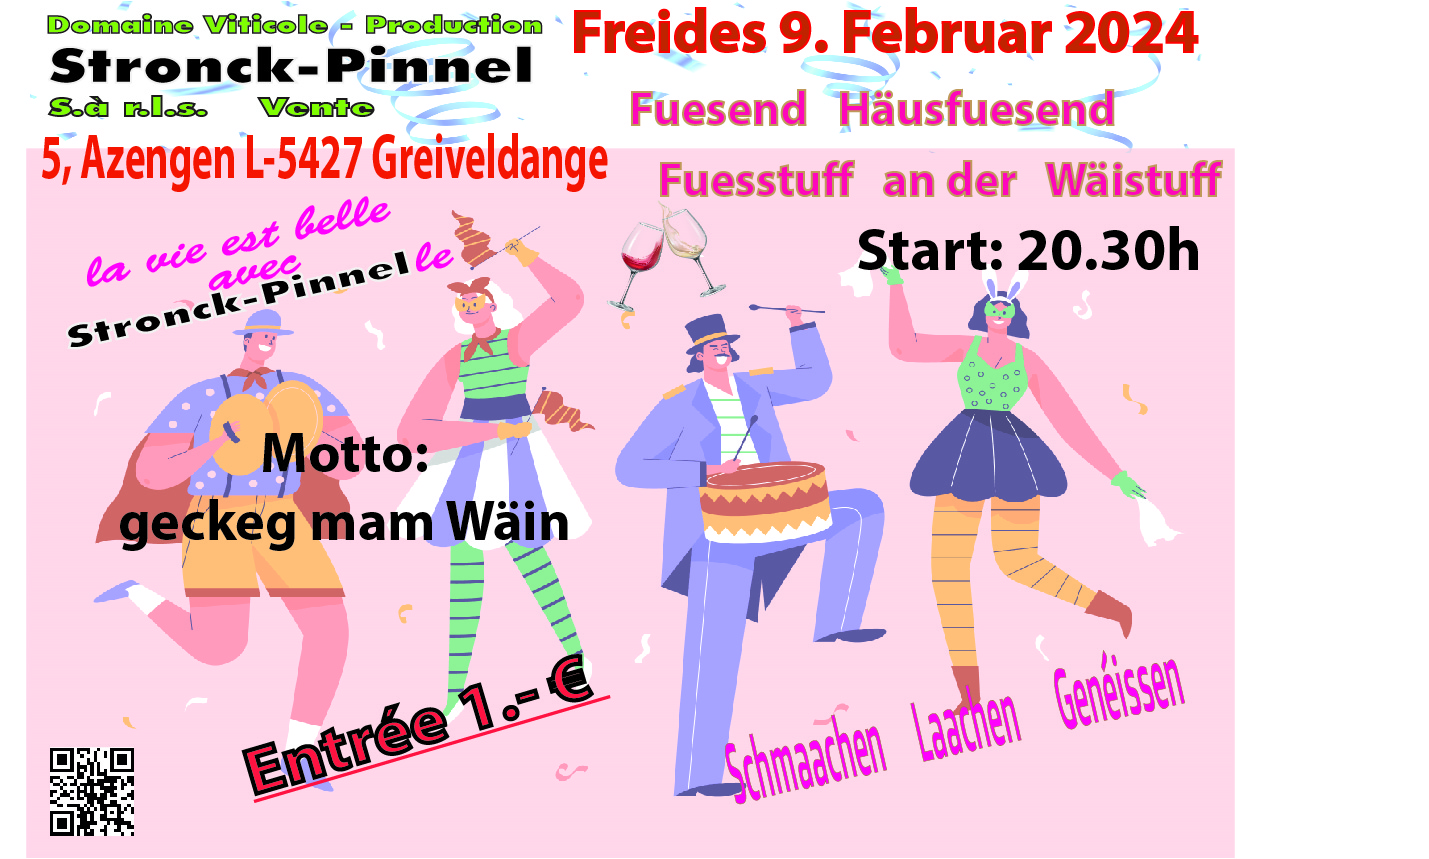 Freides de 9. Februar 2024
Fuesend an der Wäistuff
Entrée 1 € 
Start: 20.30h